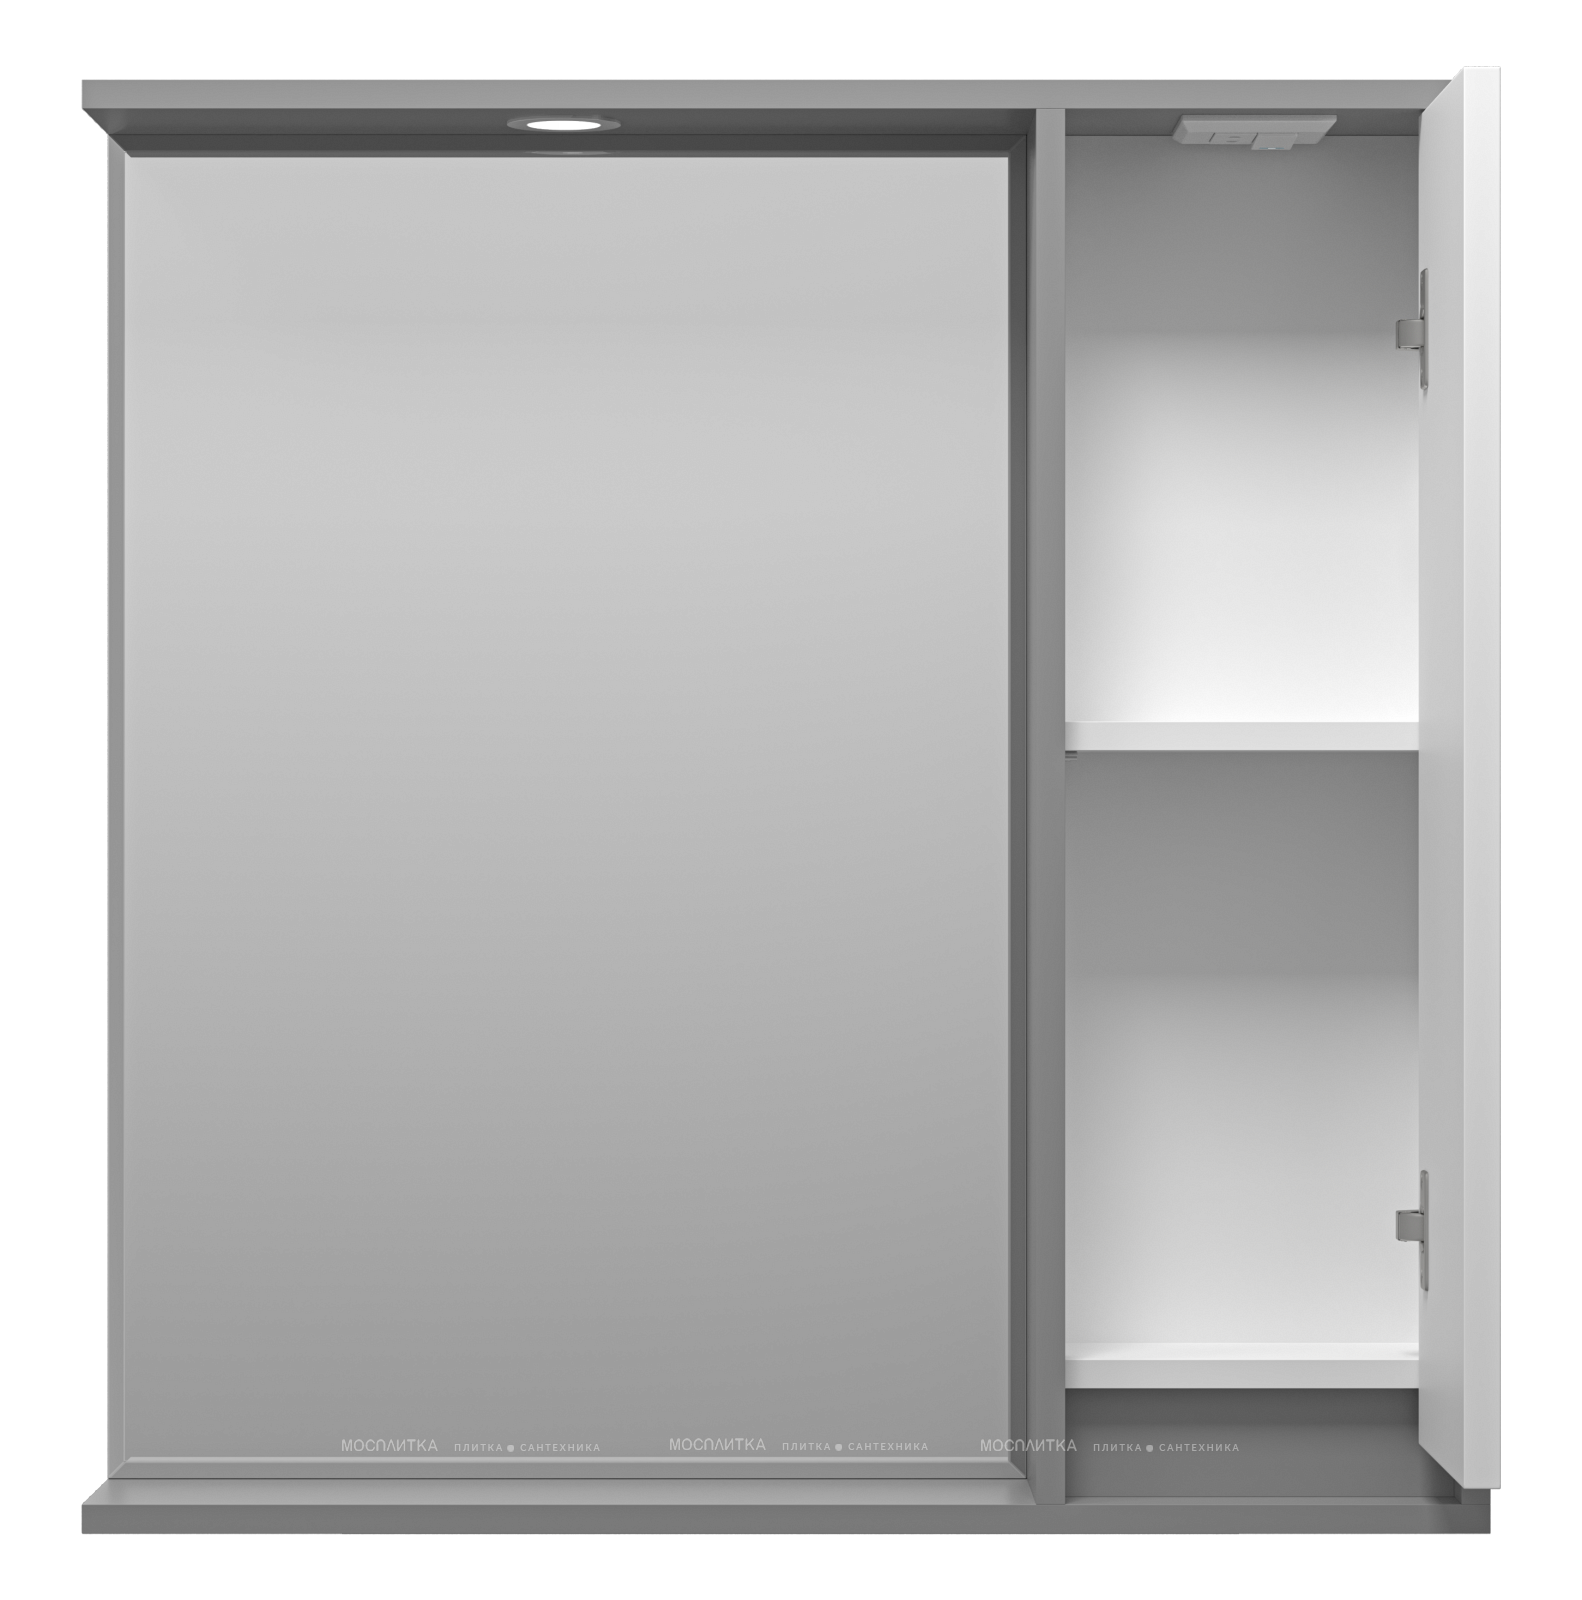 Зеркальный шкаф Brevita Balaton 80 см BAL-04080-01-01П правый, с подсветкой, белый / серый - изображение 3